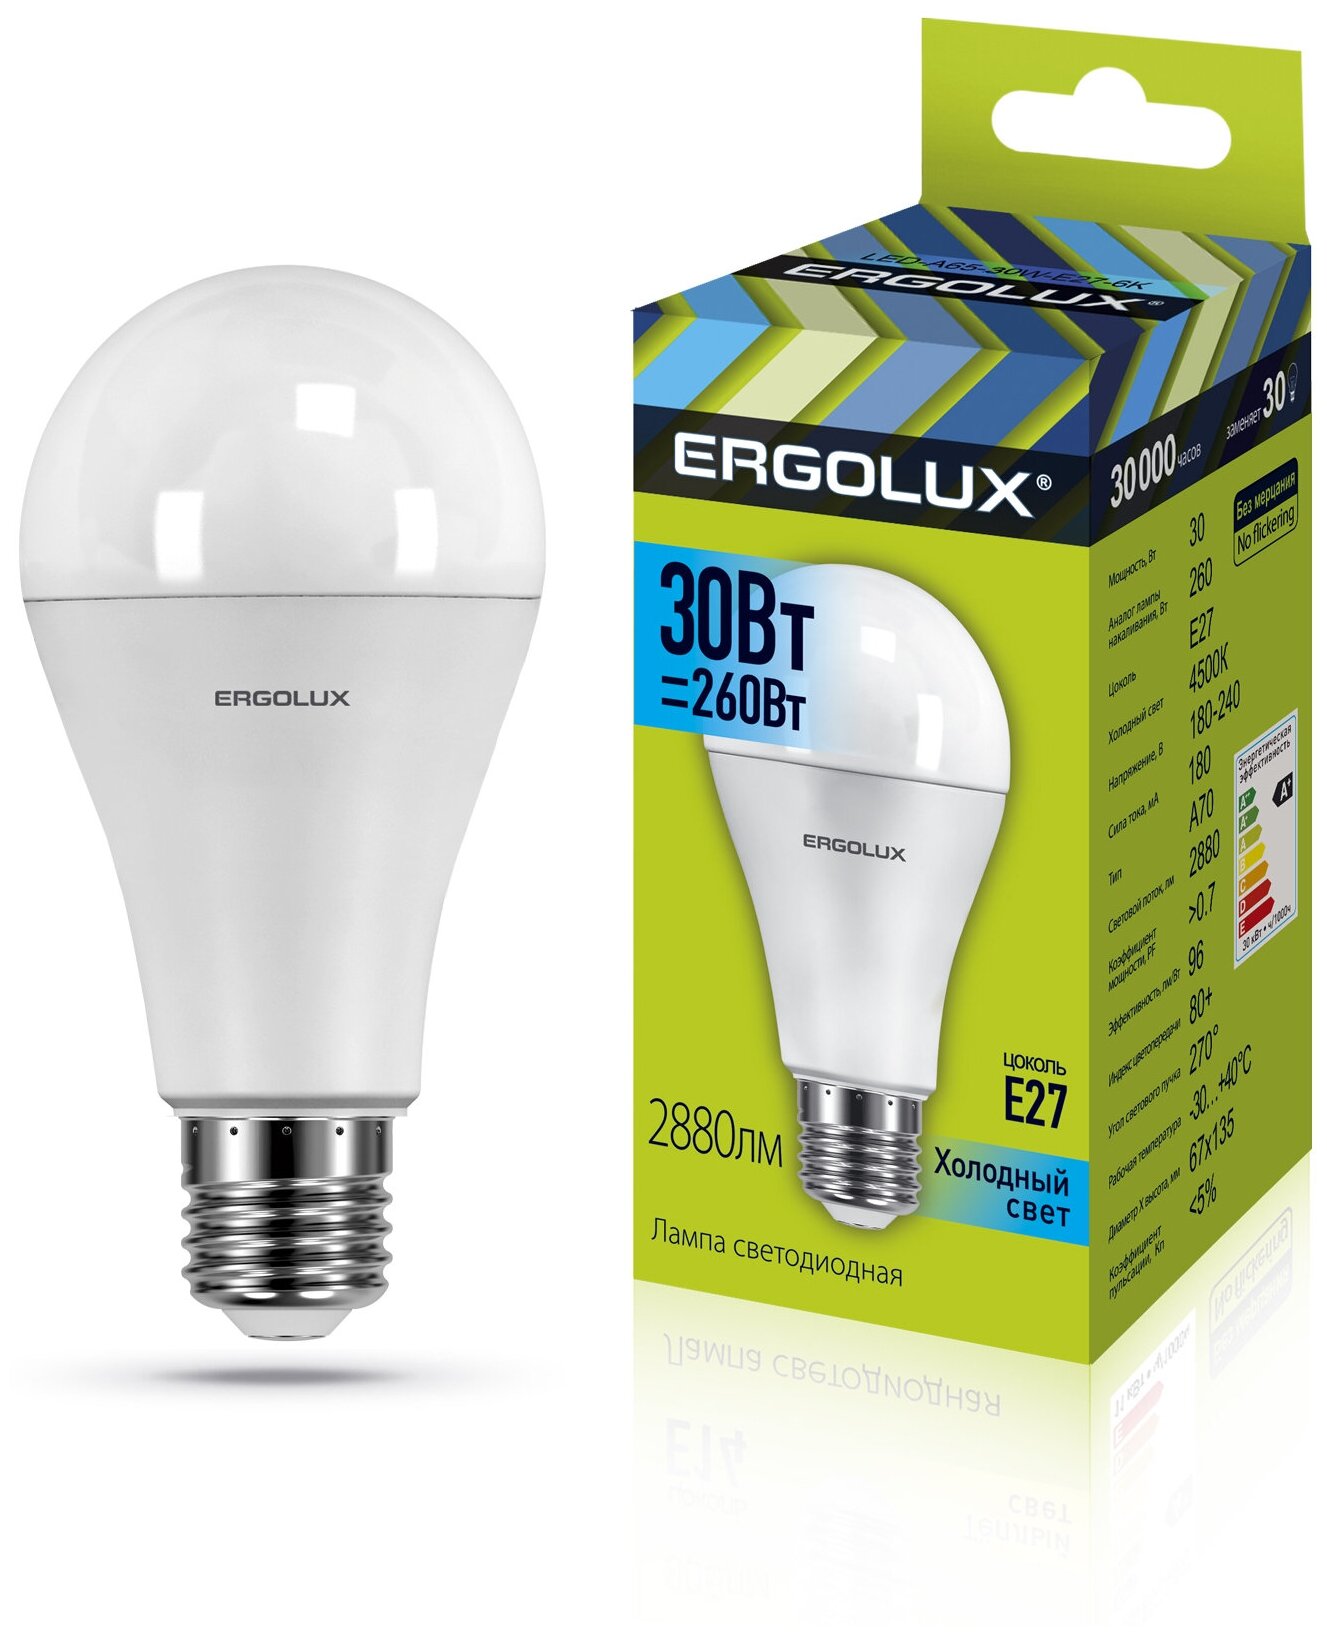 Ergolux LED-A70-30W-E27-4K (Эл.лампа светодиодная ЛОН 30Вт E27 4500K 180-240В)